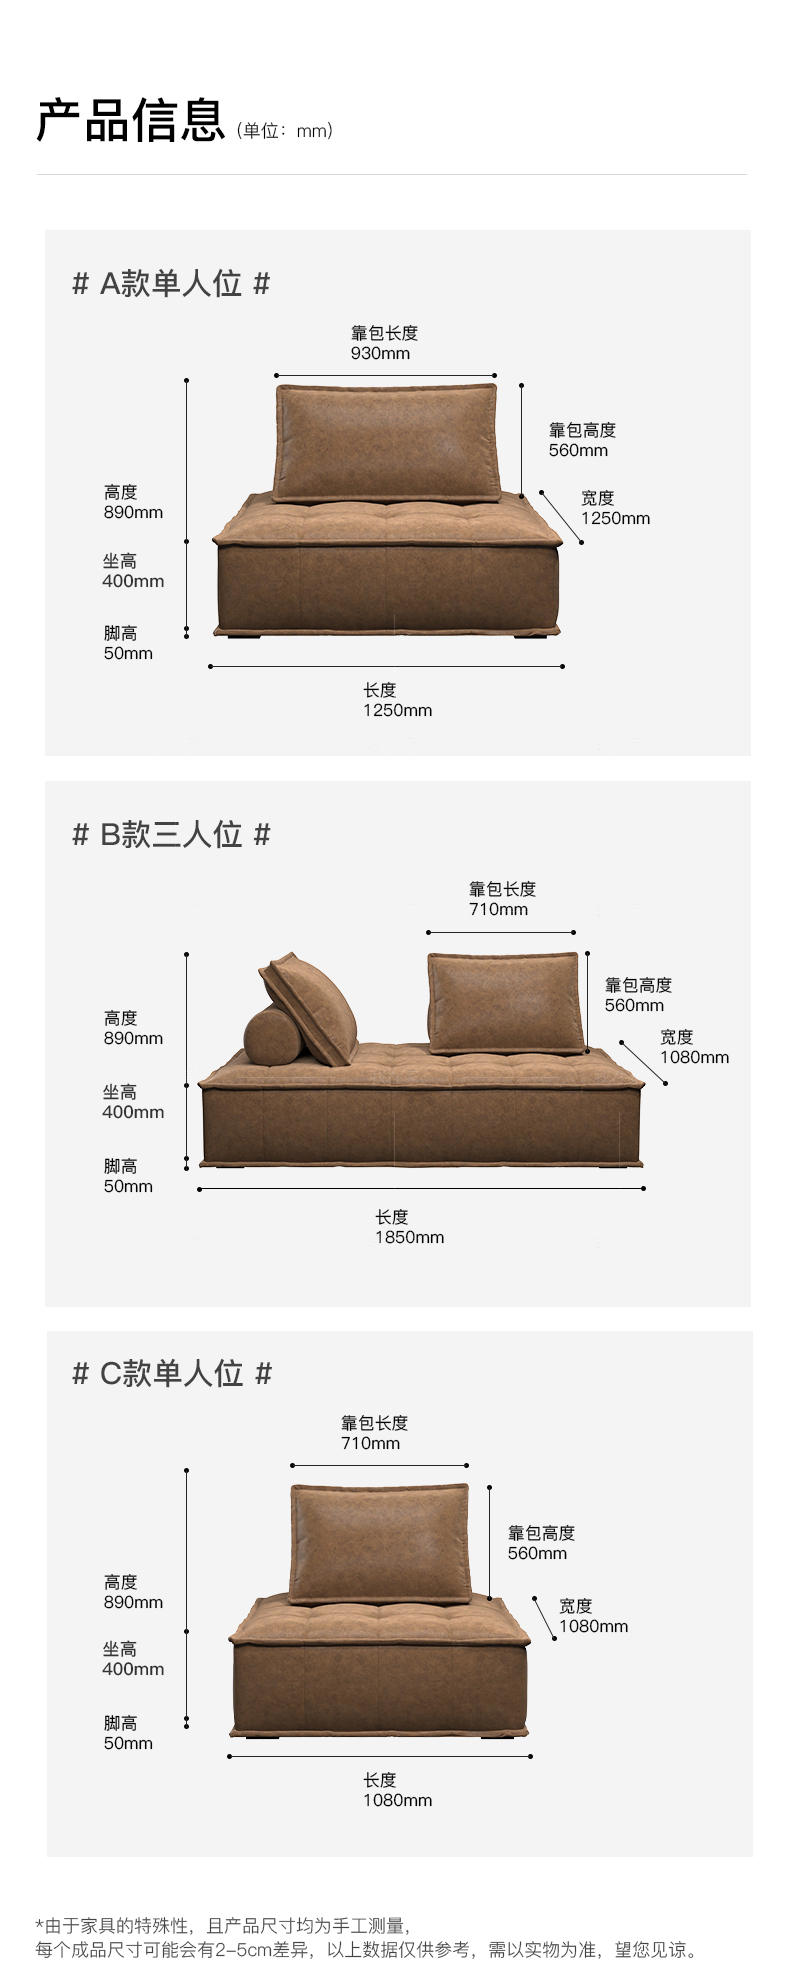 中古风风格魔方沙发的家具详细介绍